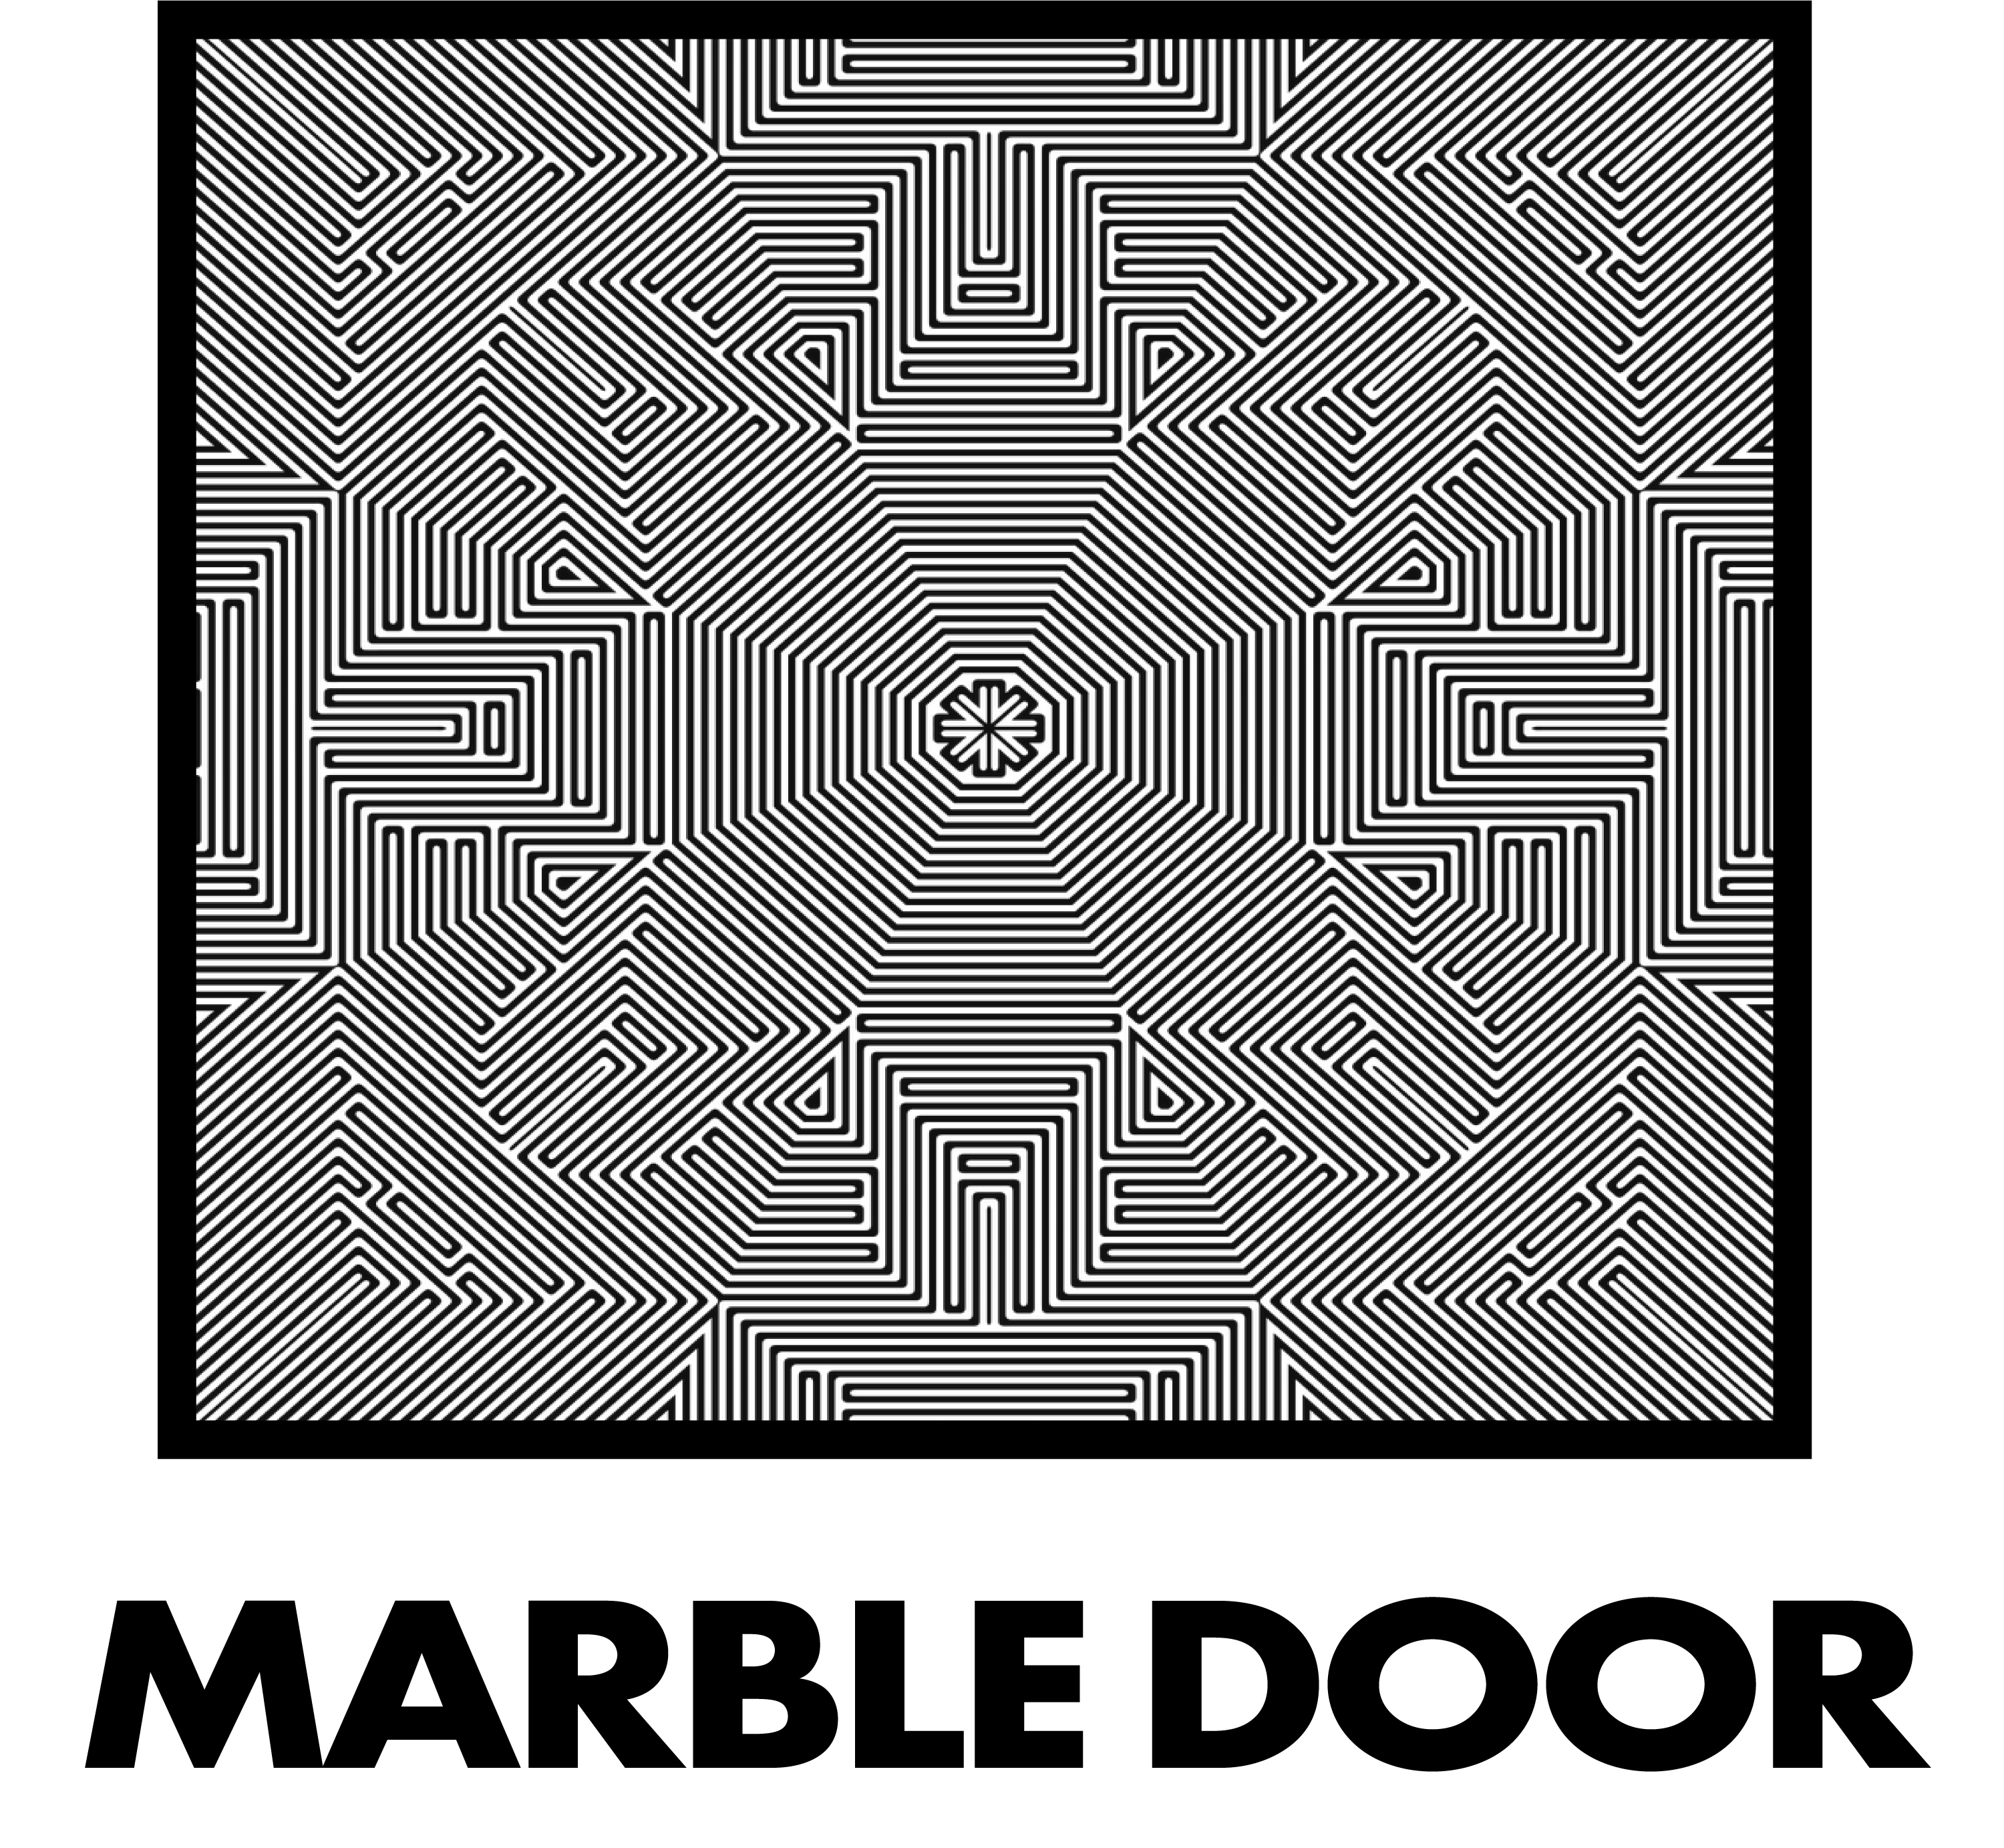 MARBLE DOOR